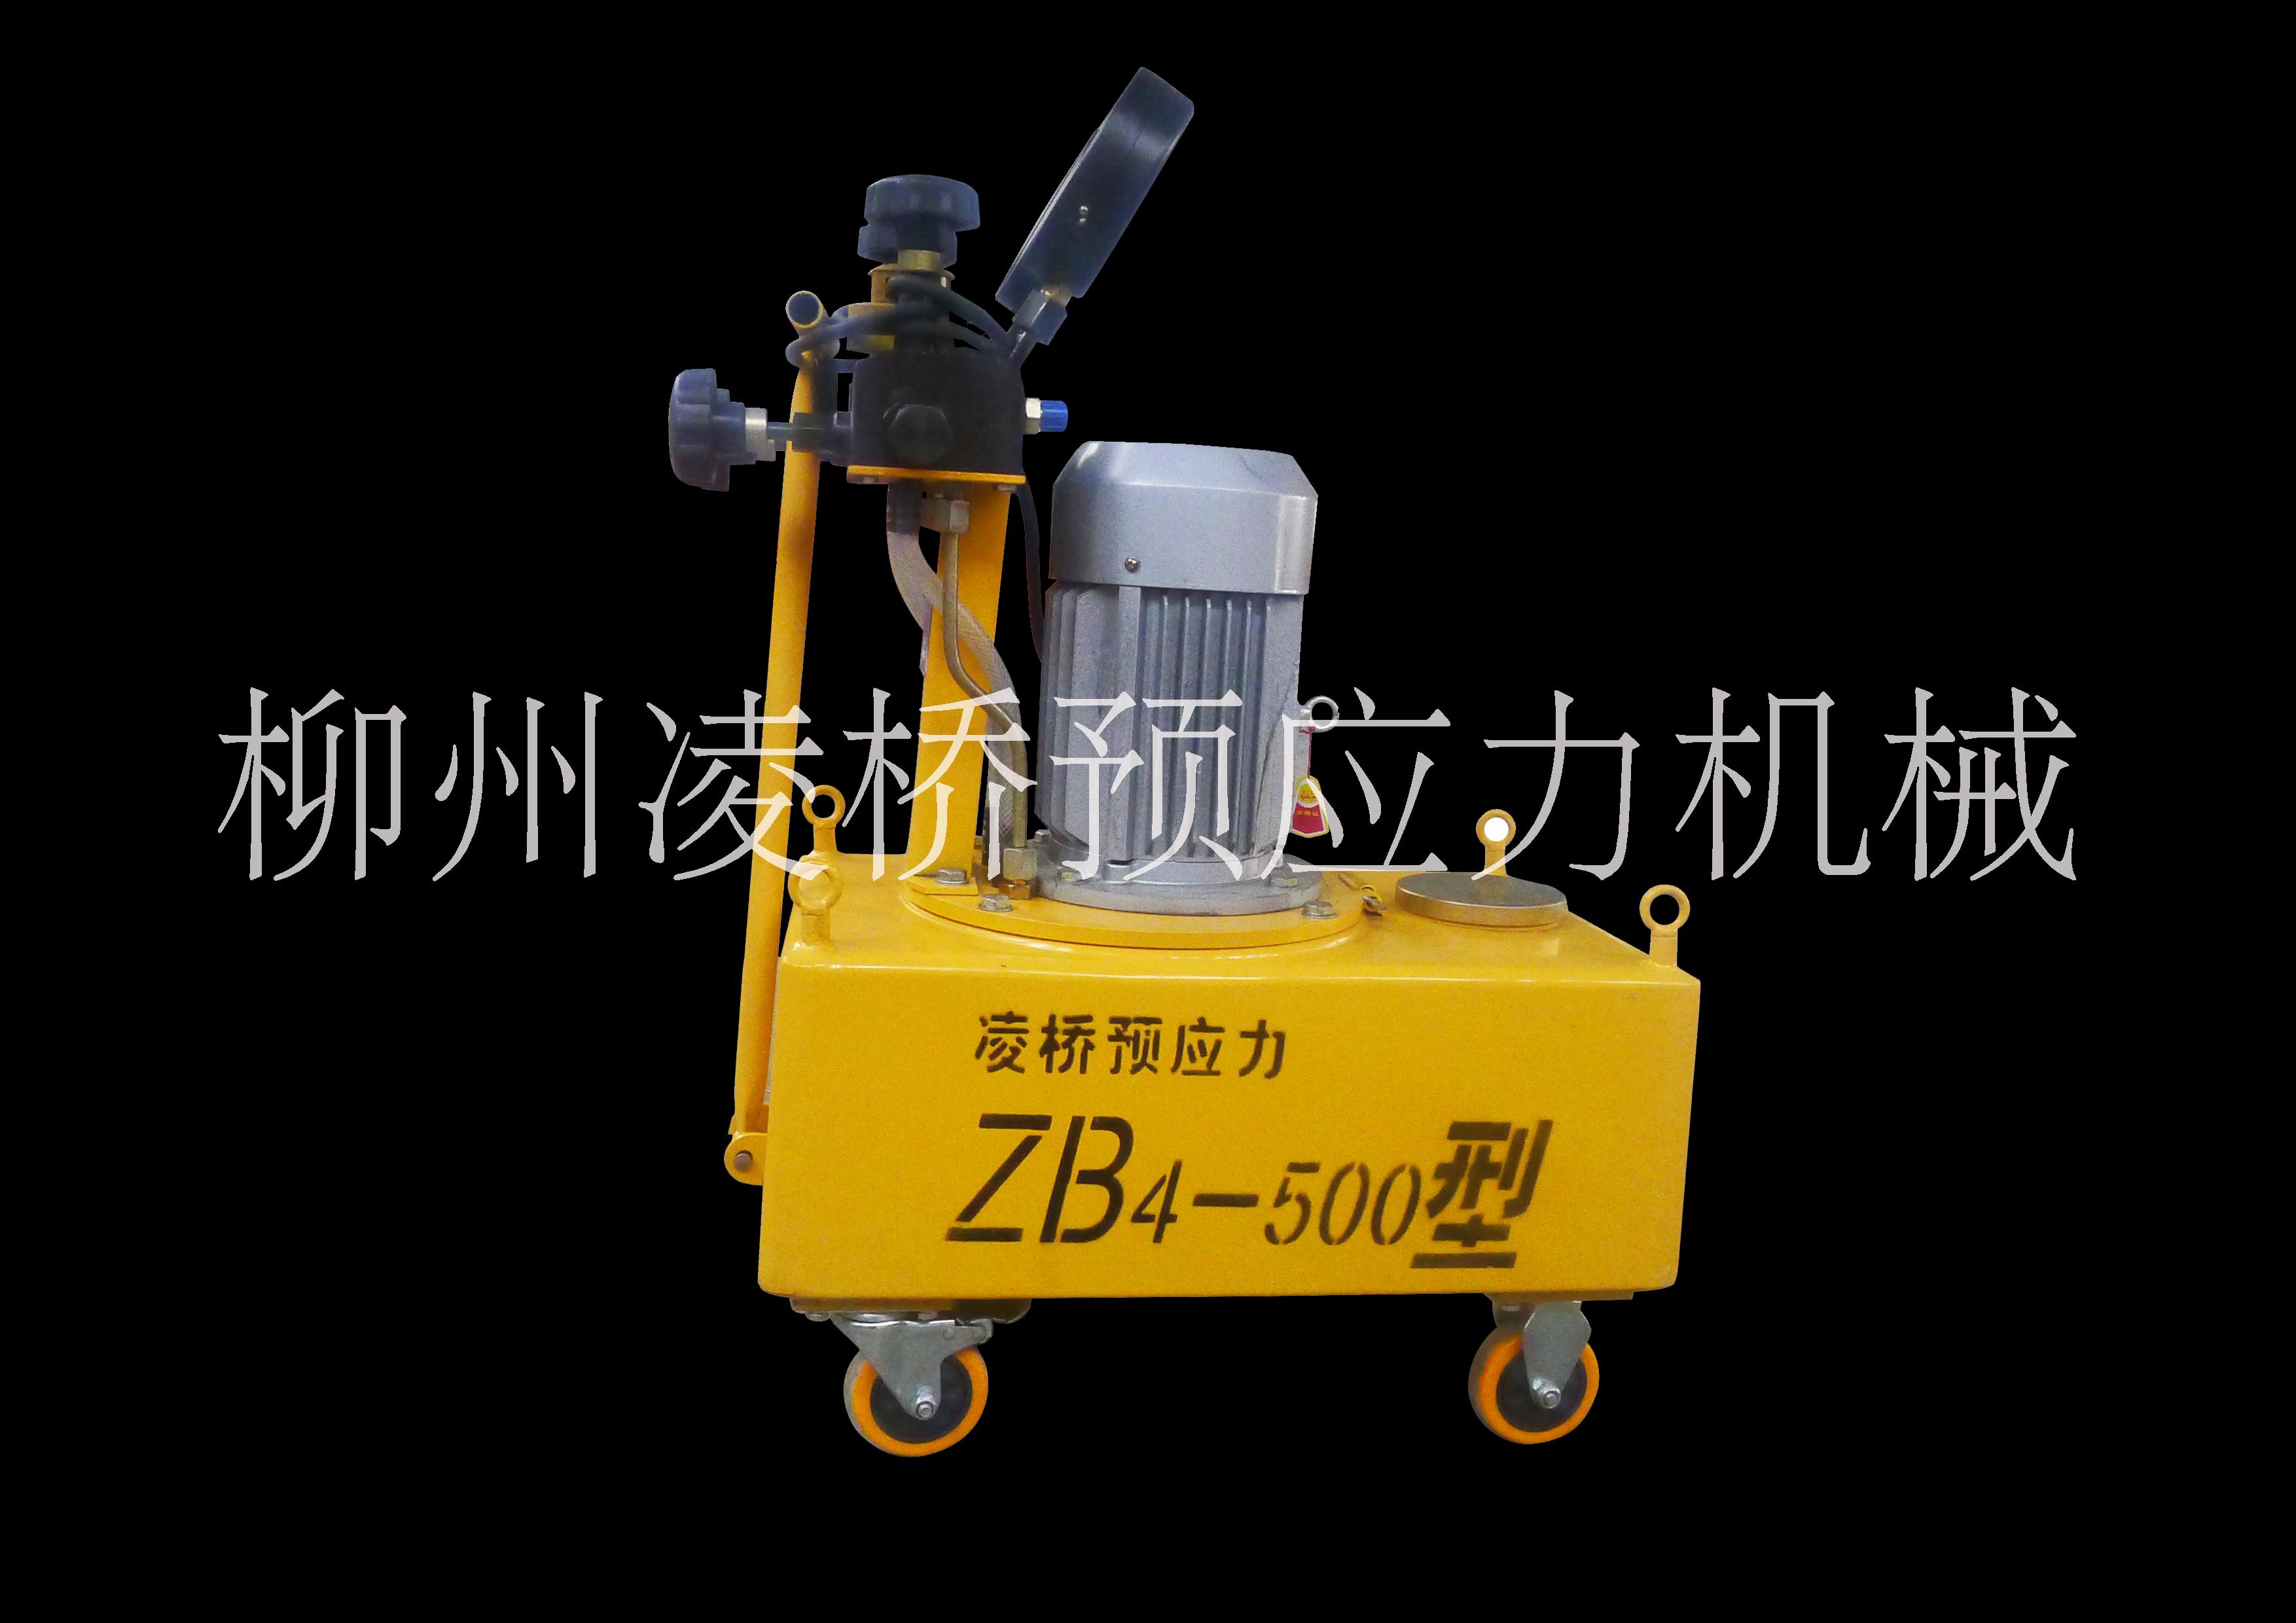 油泵生产厂家，电动油泵报价，ZB系列电动油泵，成都ZB系列油泵 ZB4-600电动油泵图片